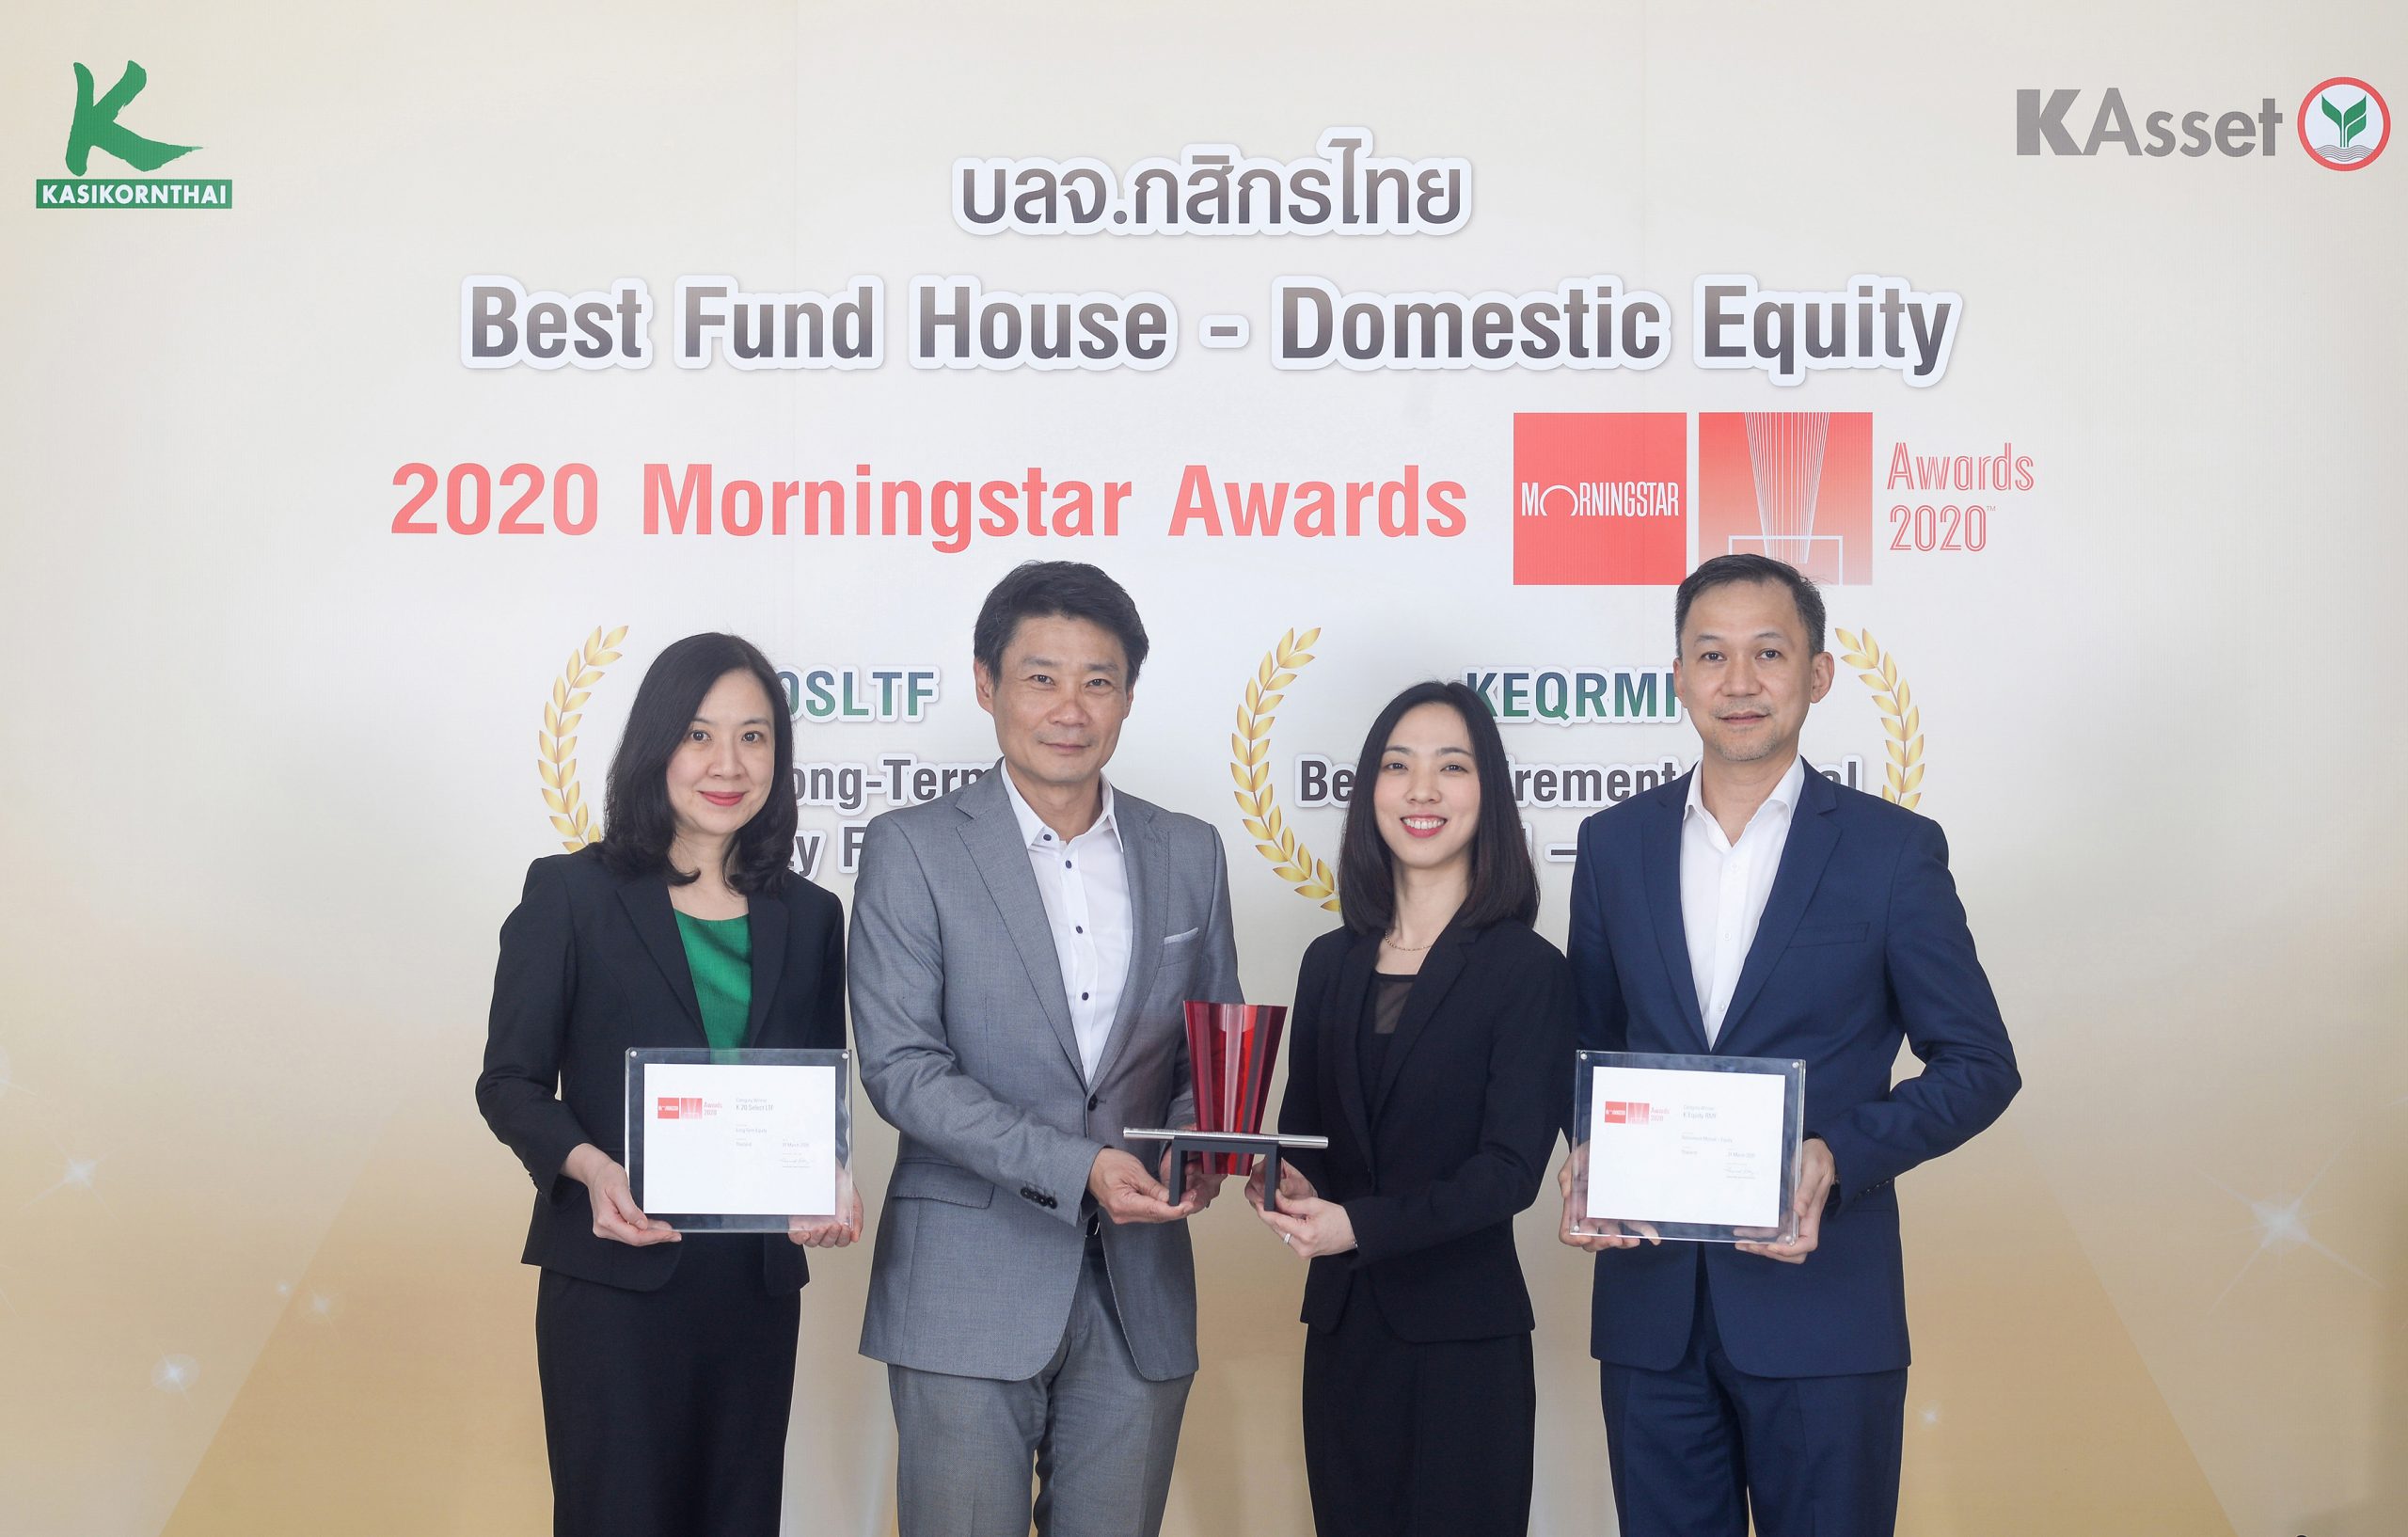 บลจ.กสิกรไทย คว้า 3 รางวัลยอดเยี่ยมจาก Morningstar Awards 2020 การันตีฝีมือบริหารจัดการกองทุนหุ้นไทยและกองทุน